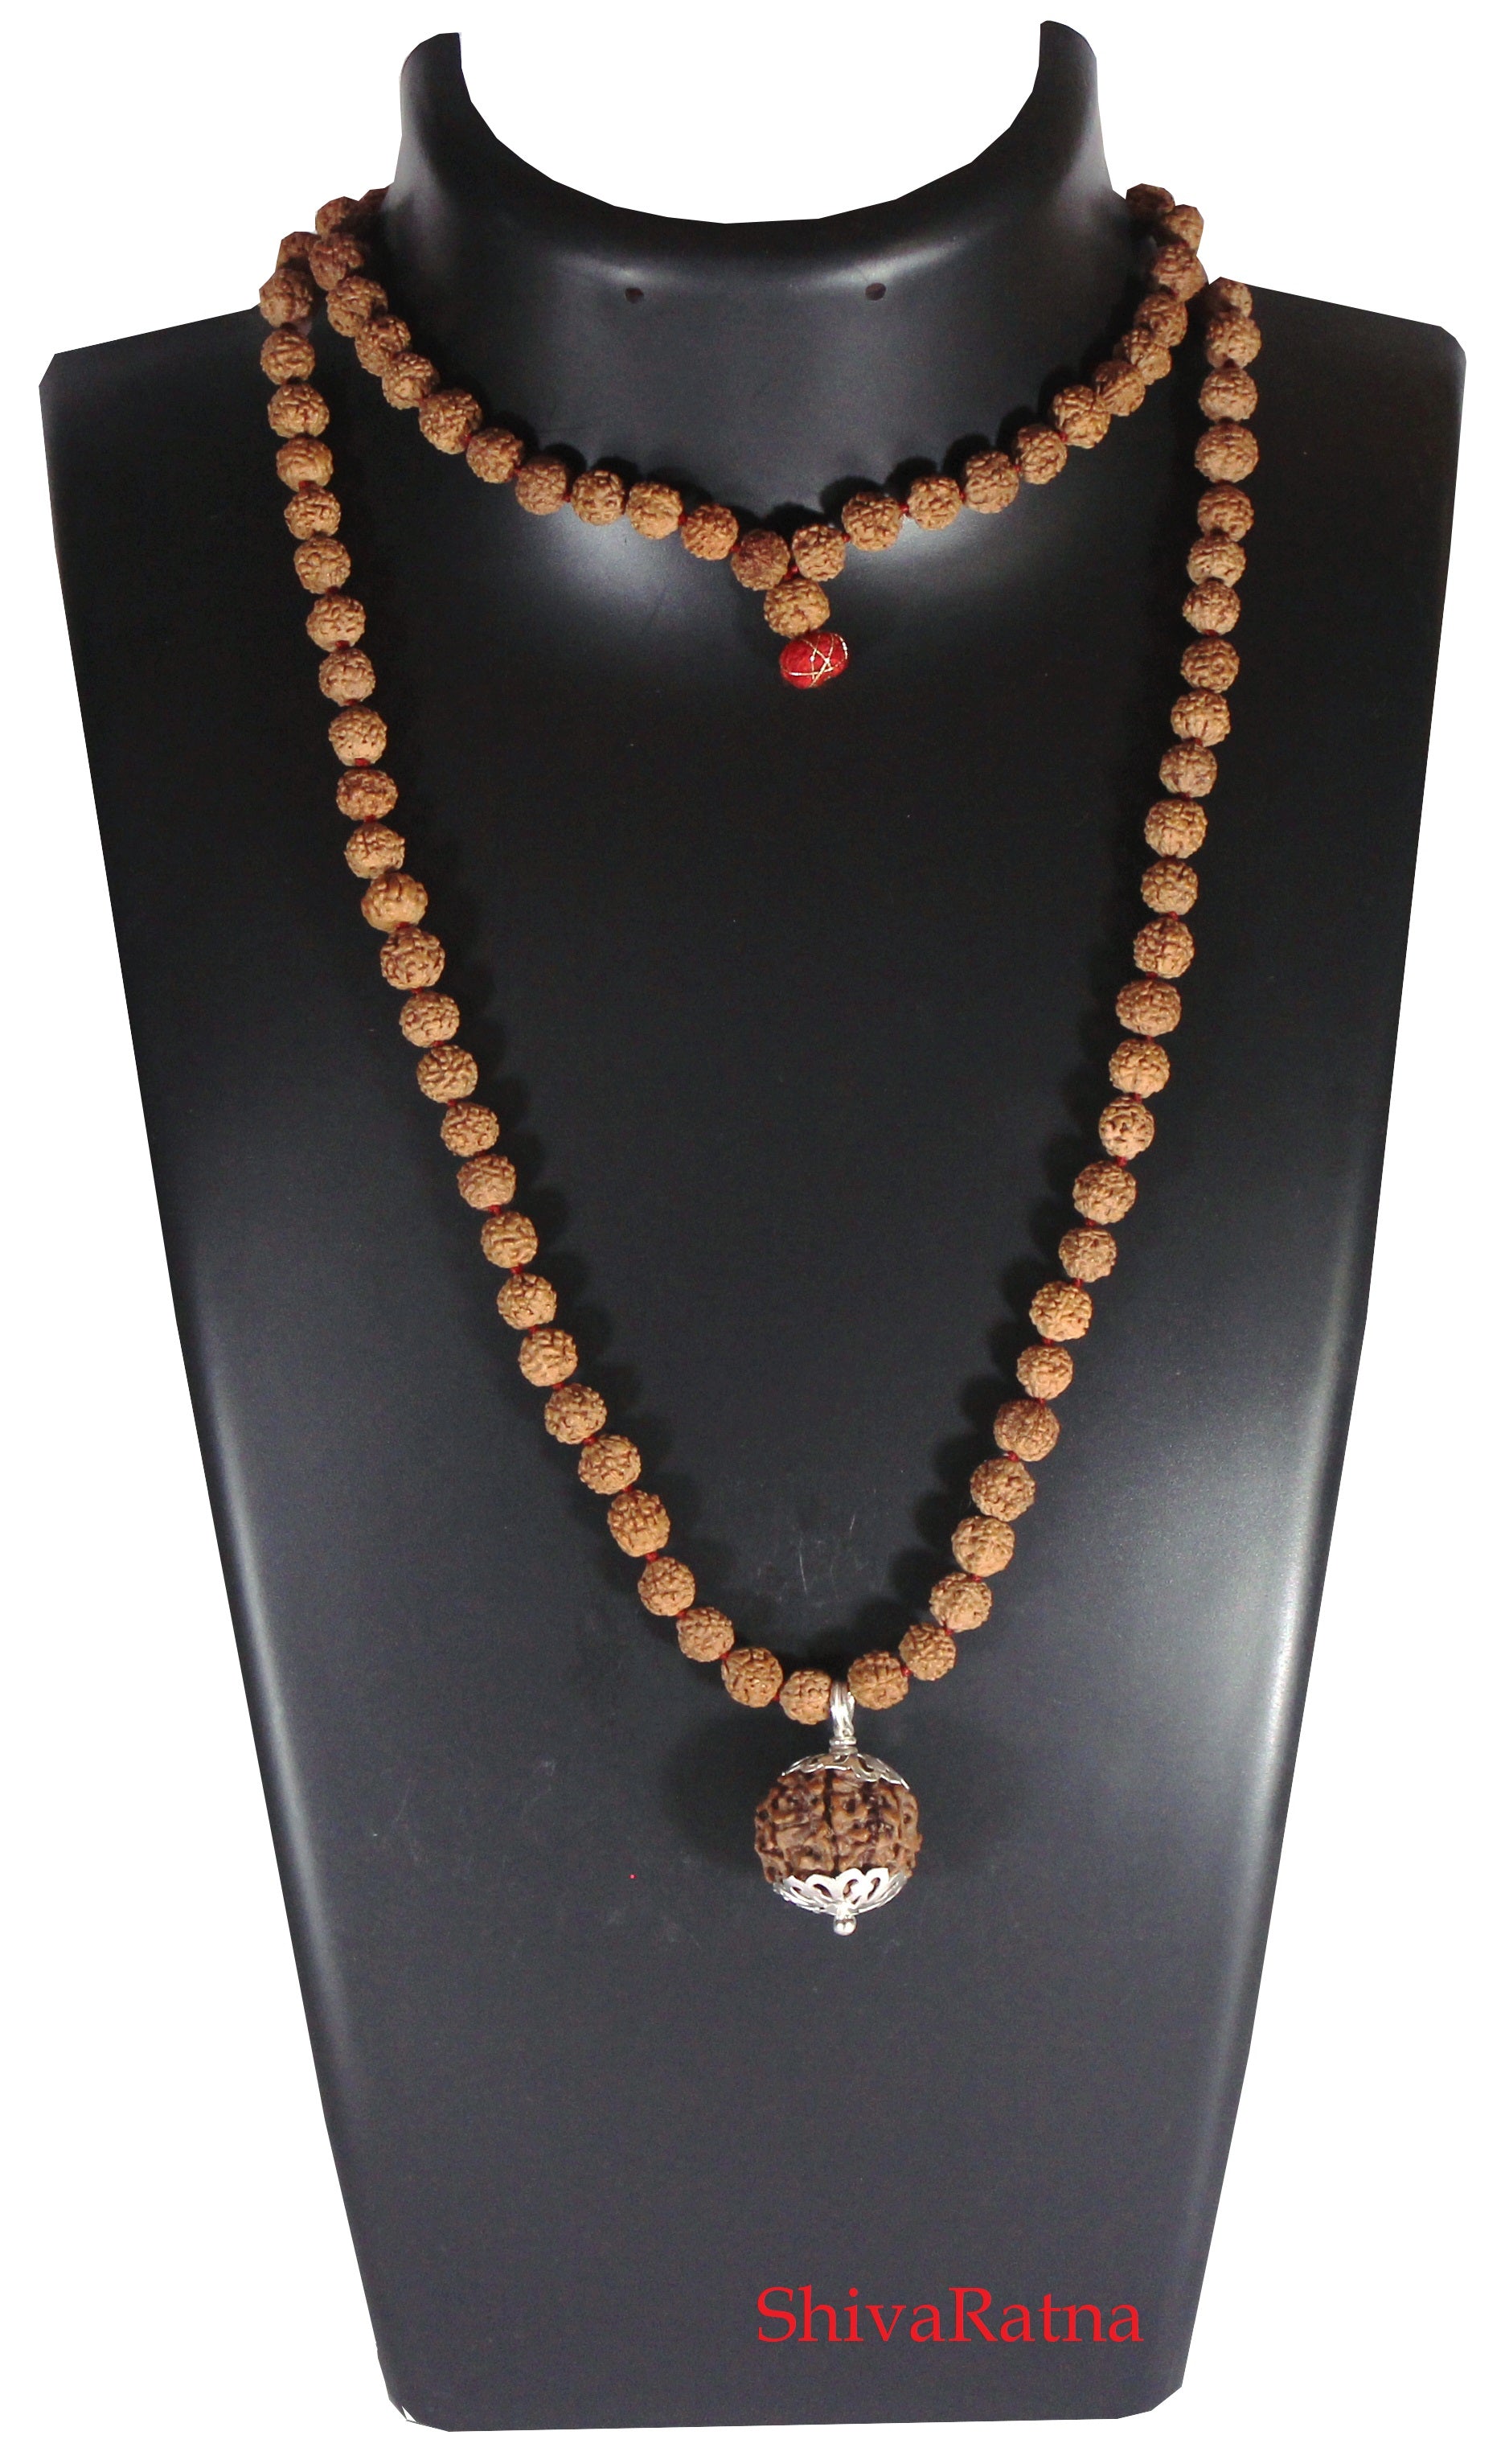 panchmukhi rudraksha mala with 5 mukhi rudraksha pendant by ShivaRatna